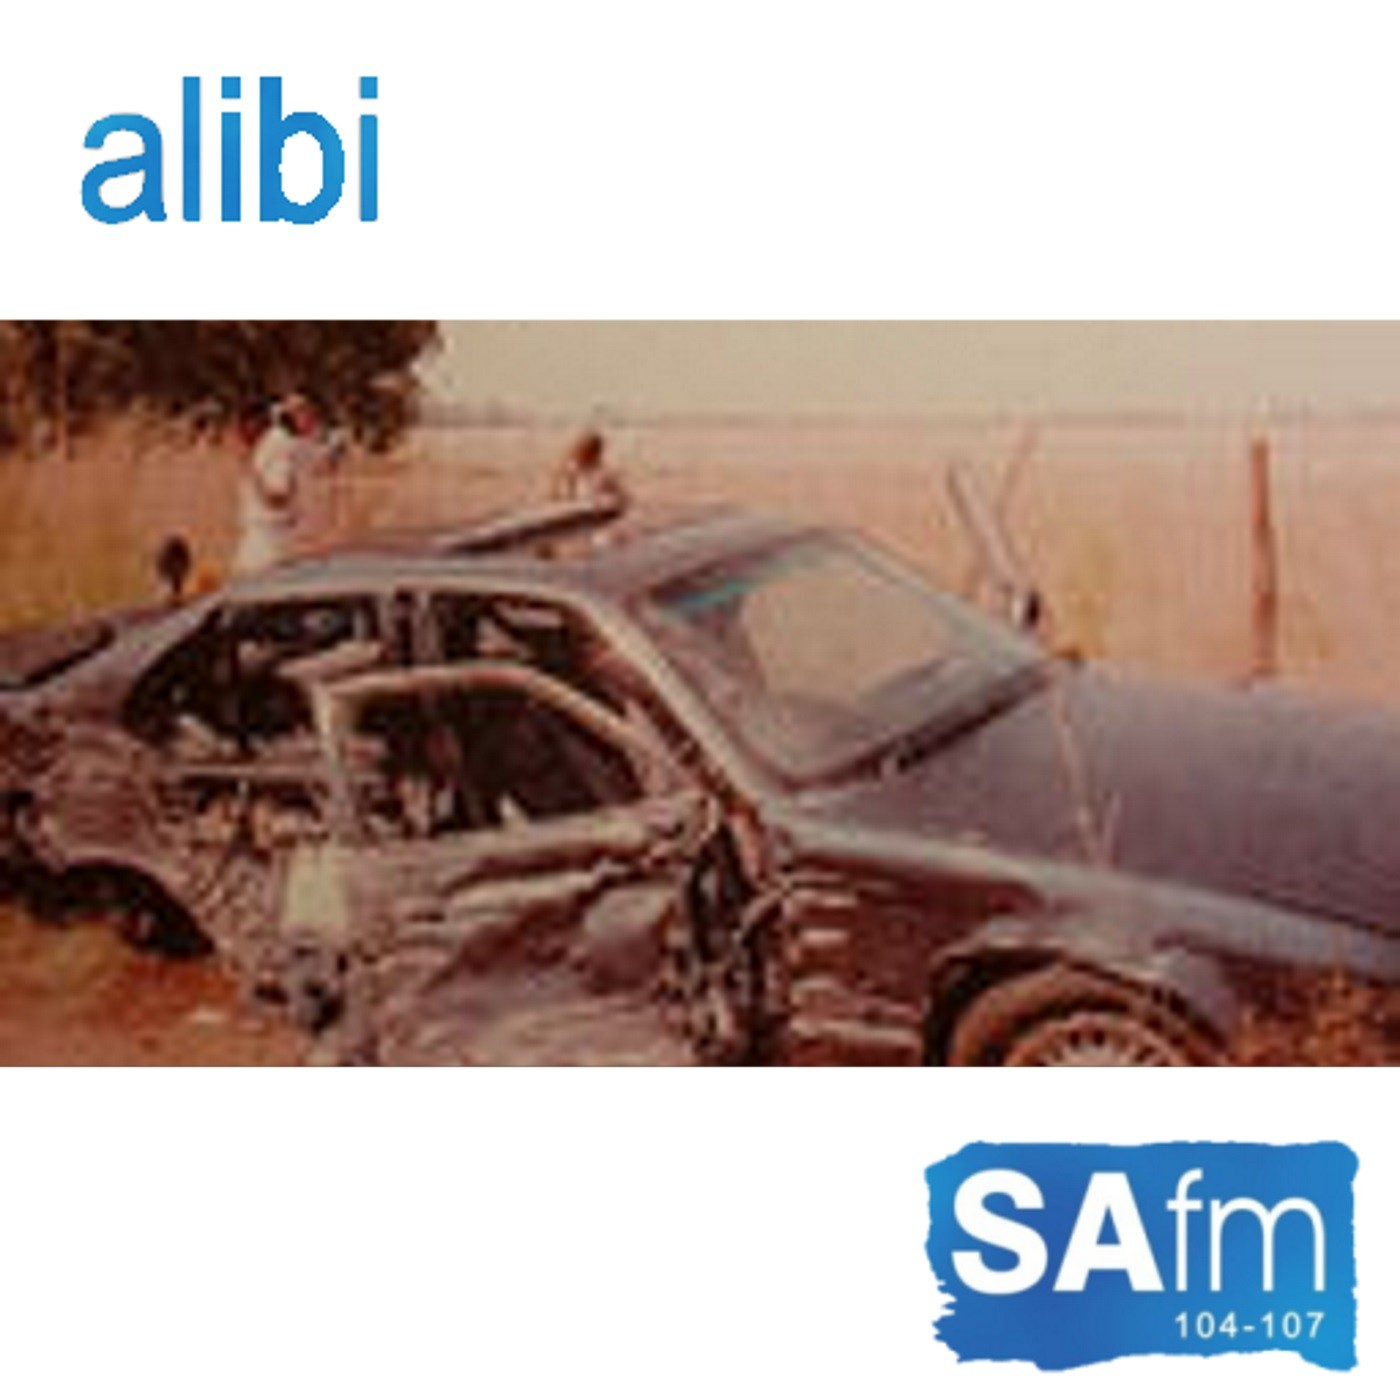 Alibi radio series - Episode 1